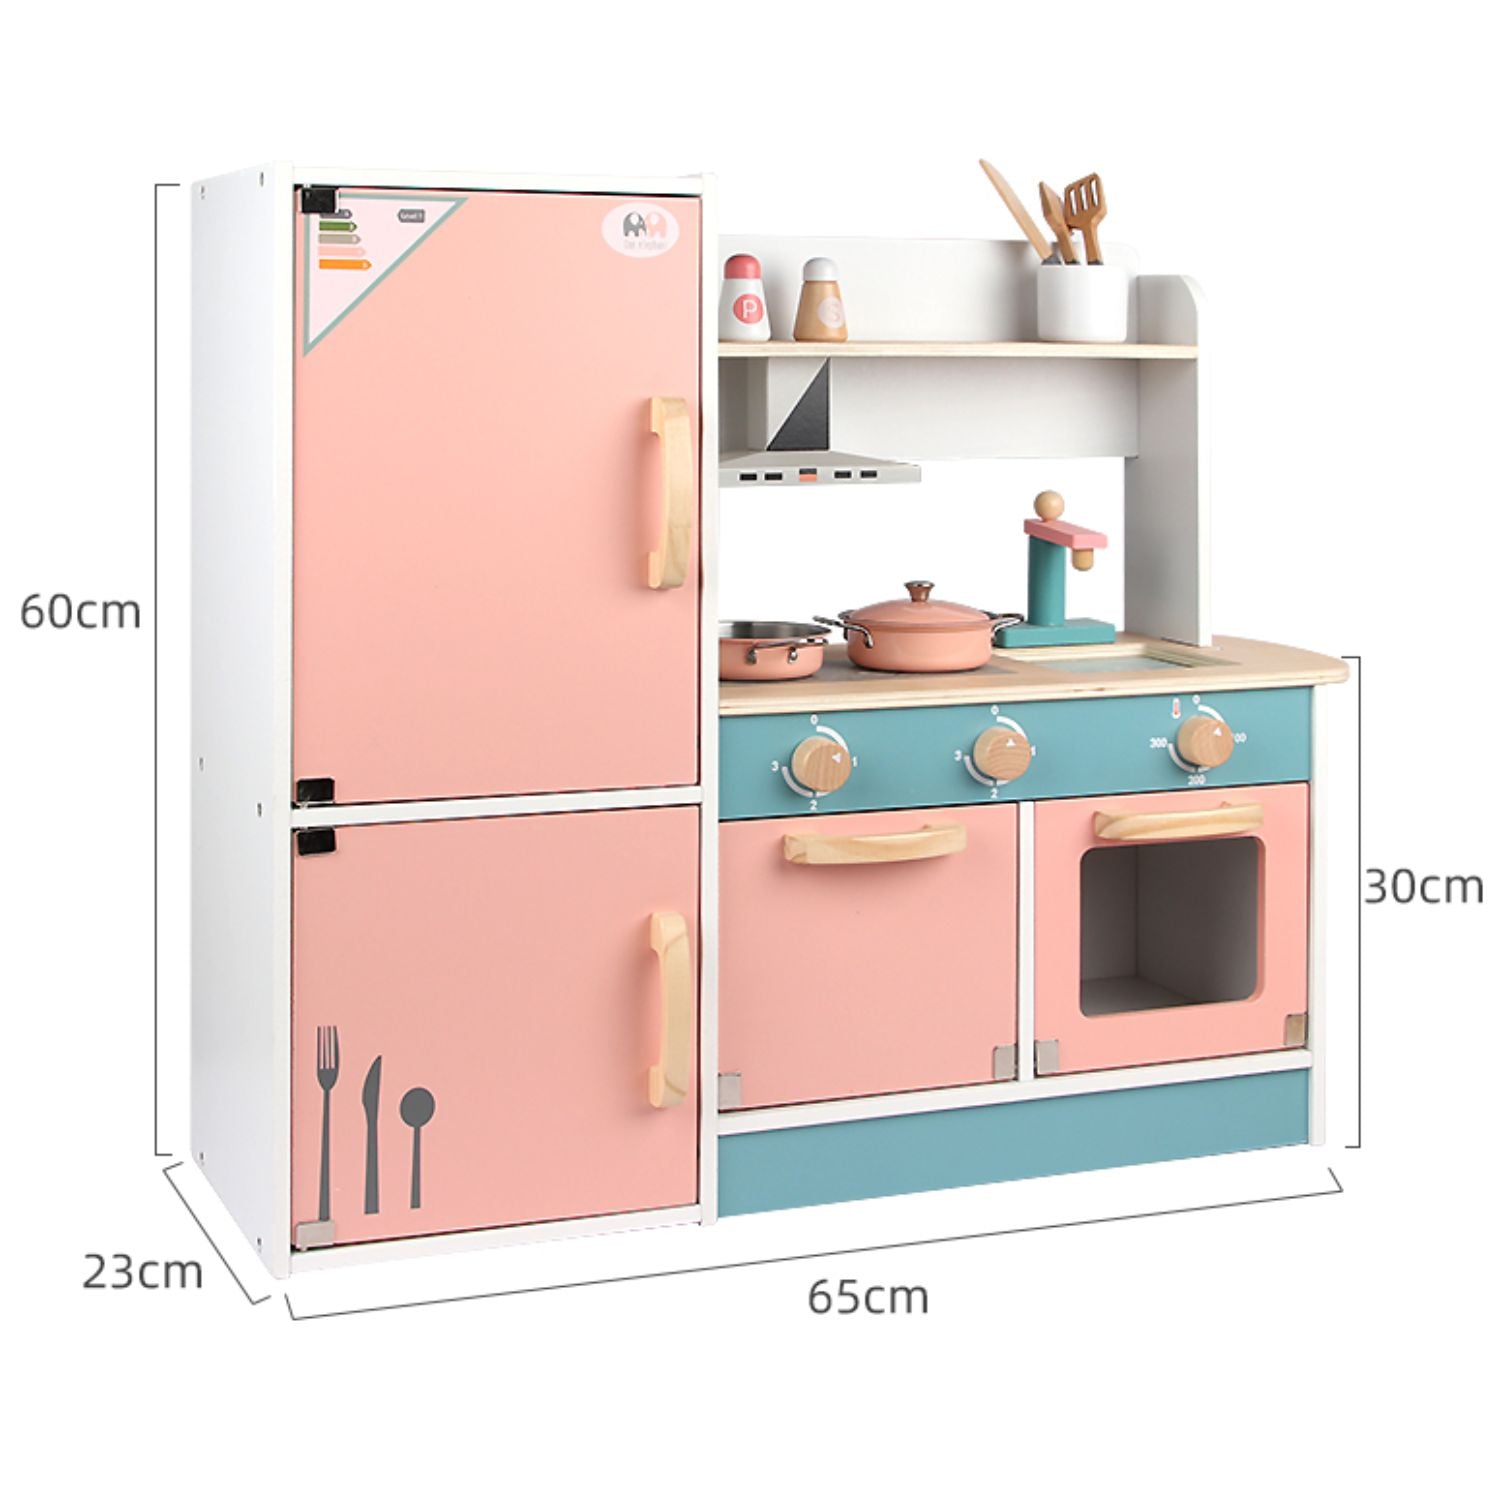 EKKIO Wooden Kitchen Playset for Kids (Refrigerator Kitchen Set)